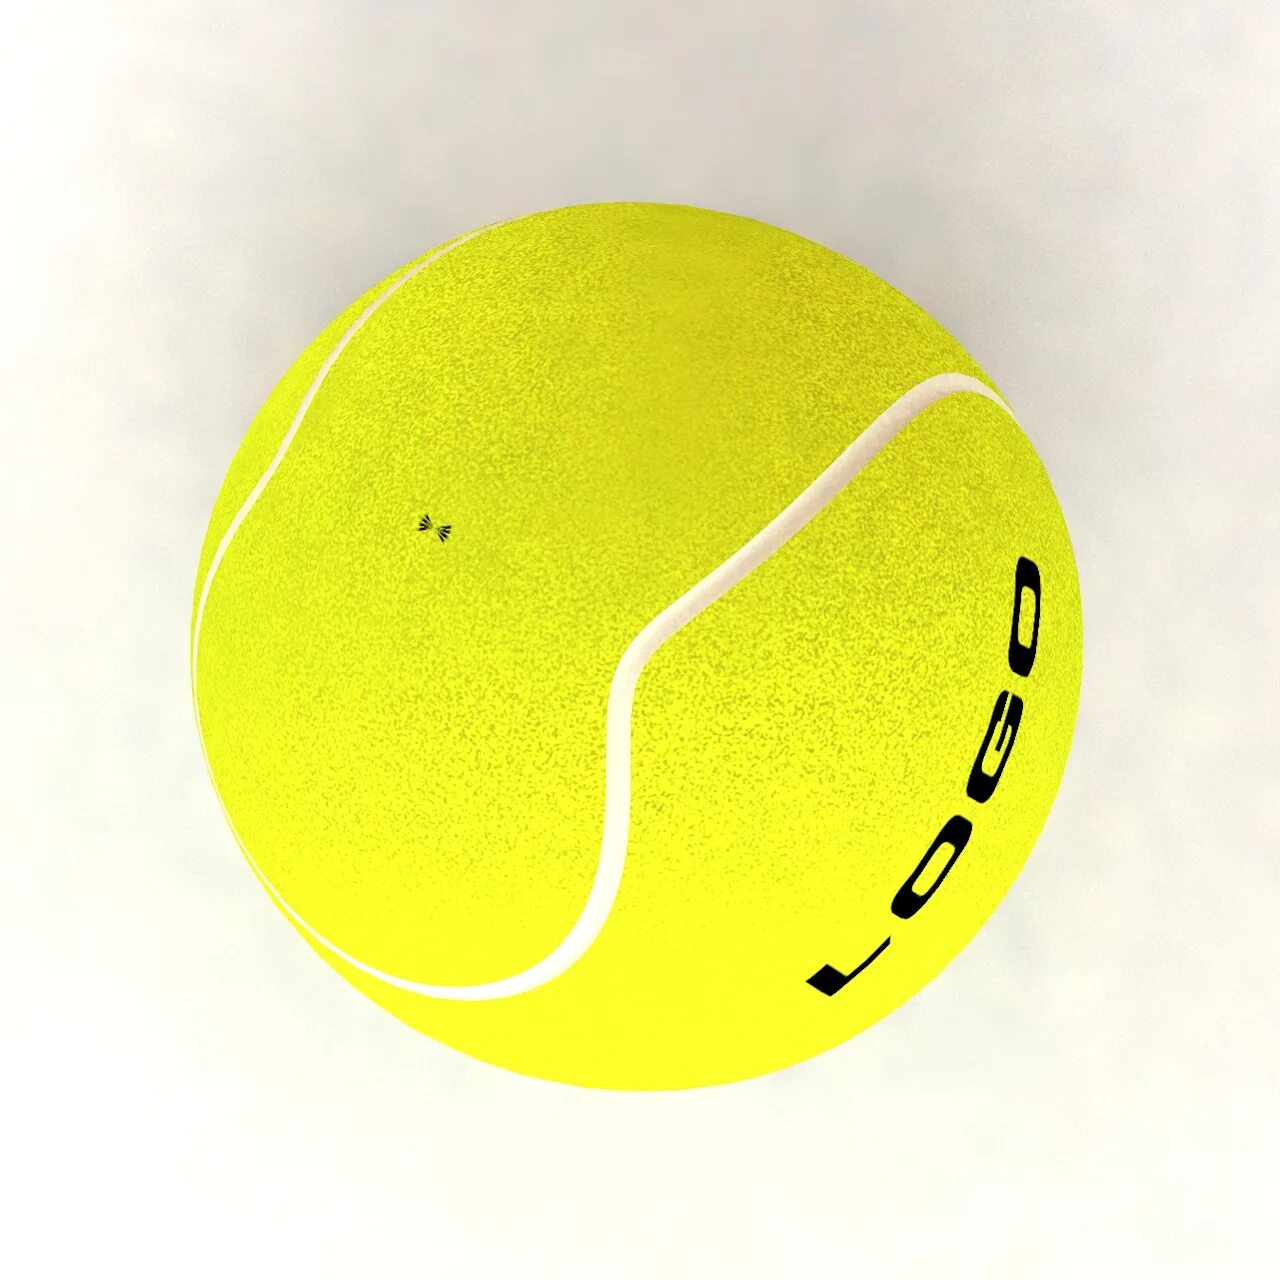 Представьте ядро размером с теннисный мячик диаметром. Мячик теннисный Спортмастер. Рал теннисного мяча. Теннисный мяч Denton. Мяч для тенниса большого Спортмастер.